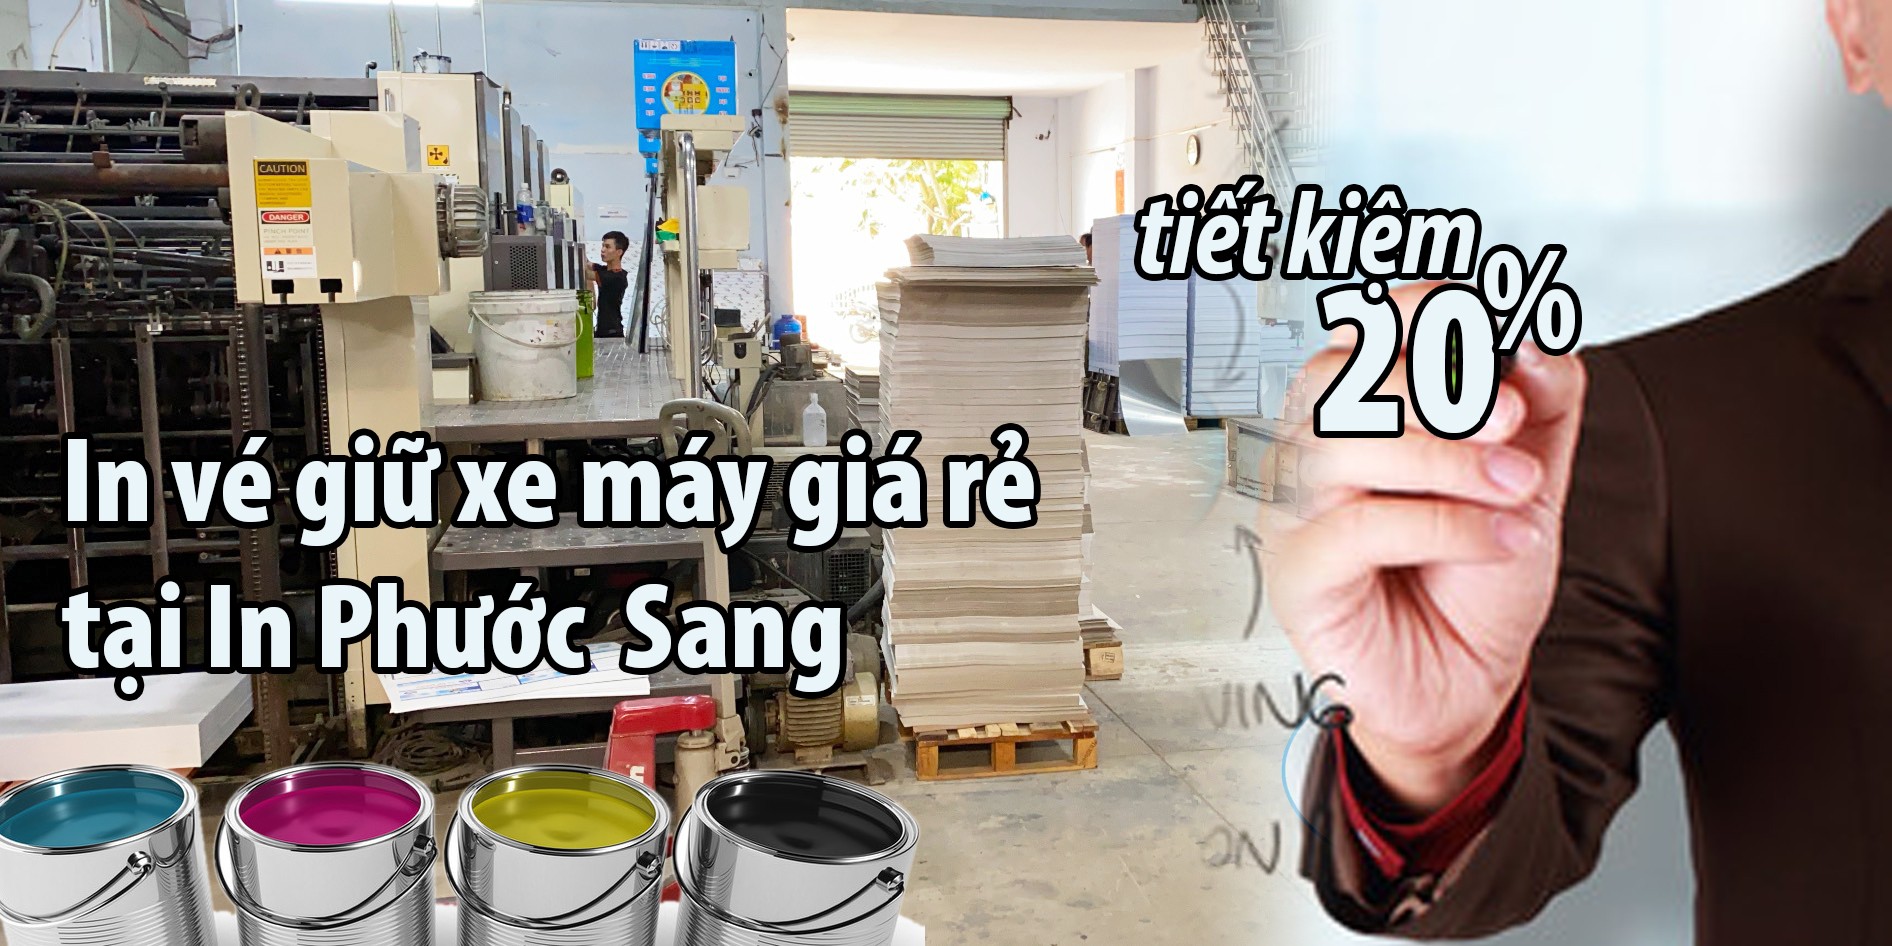 In vé xe máy giá rẻ tại in Phước Sang là bạn tiết kiệm được 20%. Với nhiều mẫu vé giữ xe máy được thiết kế in ấn chuyên nghiệp